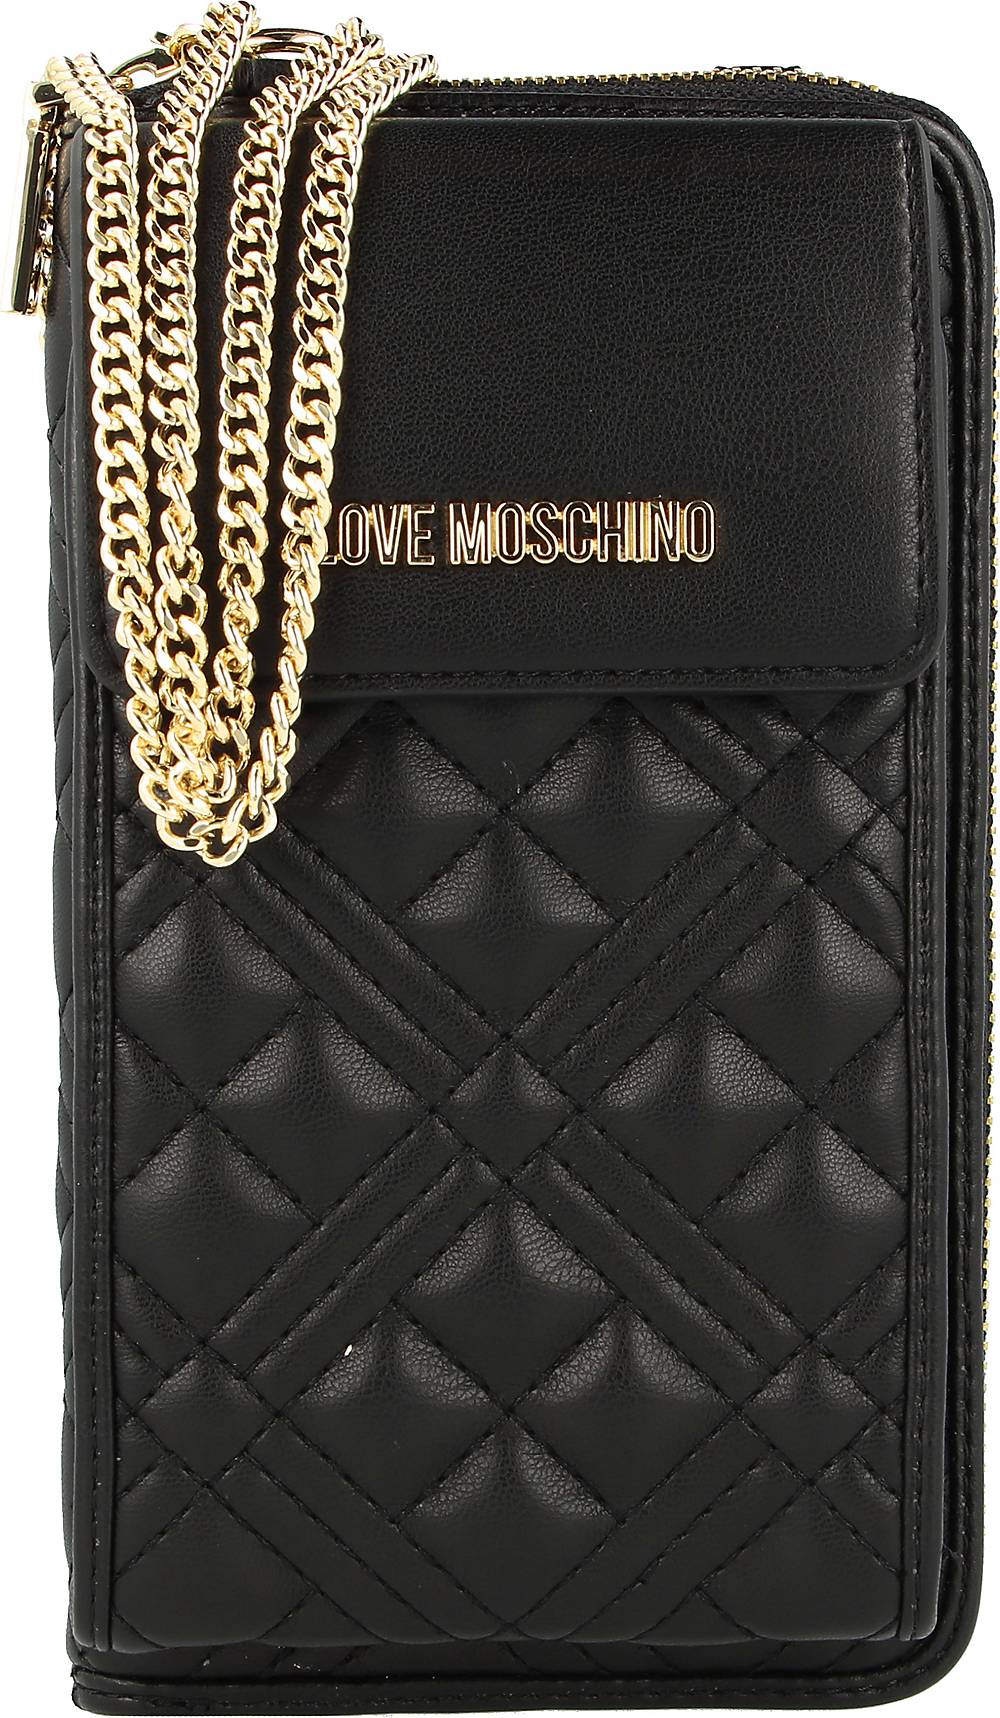 Love Moschino, Basic Quilted Handytasche Geldbörse 11 Cm in schwarz, Handyhüllen & Zubehör für Damen